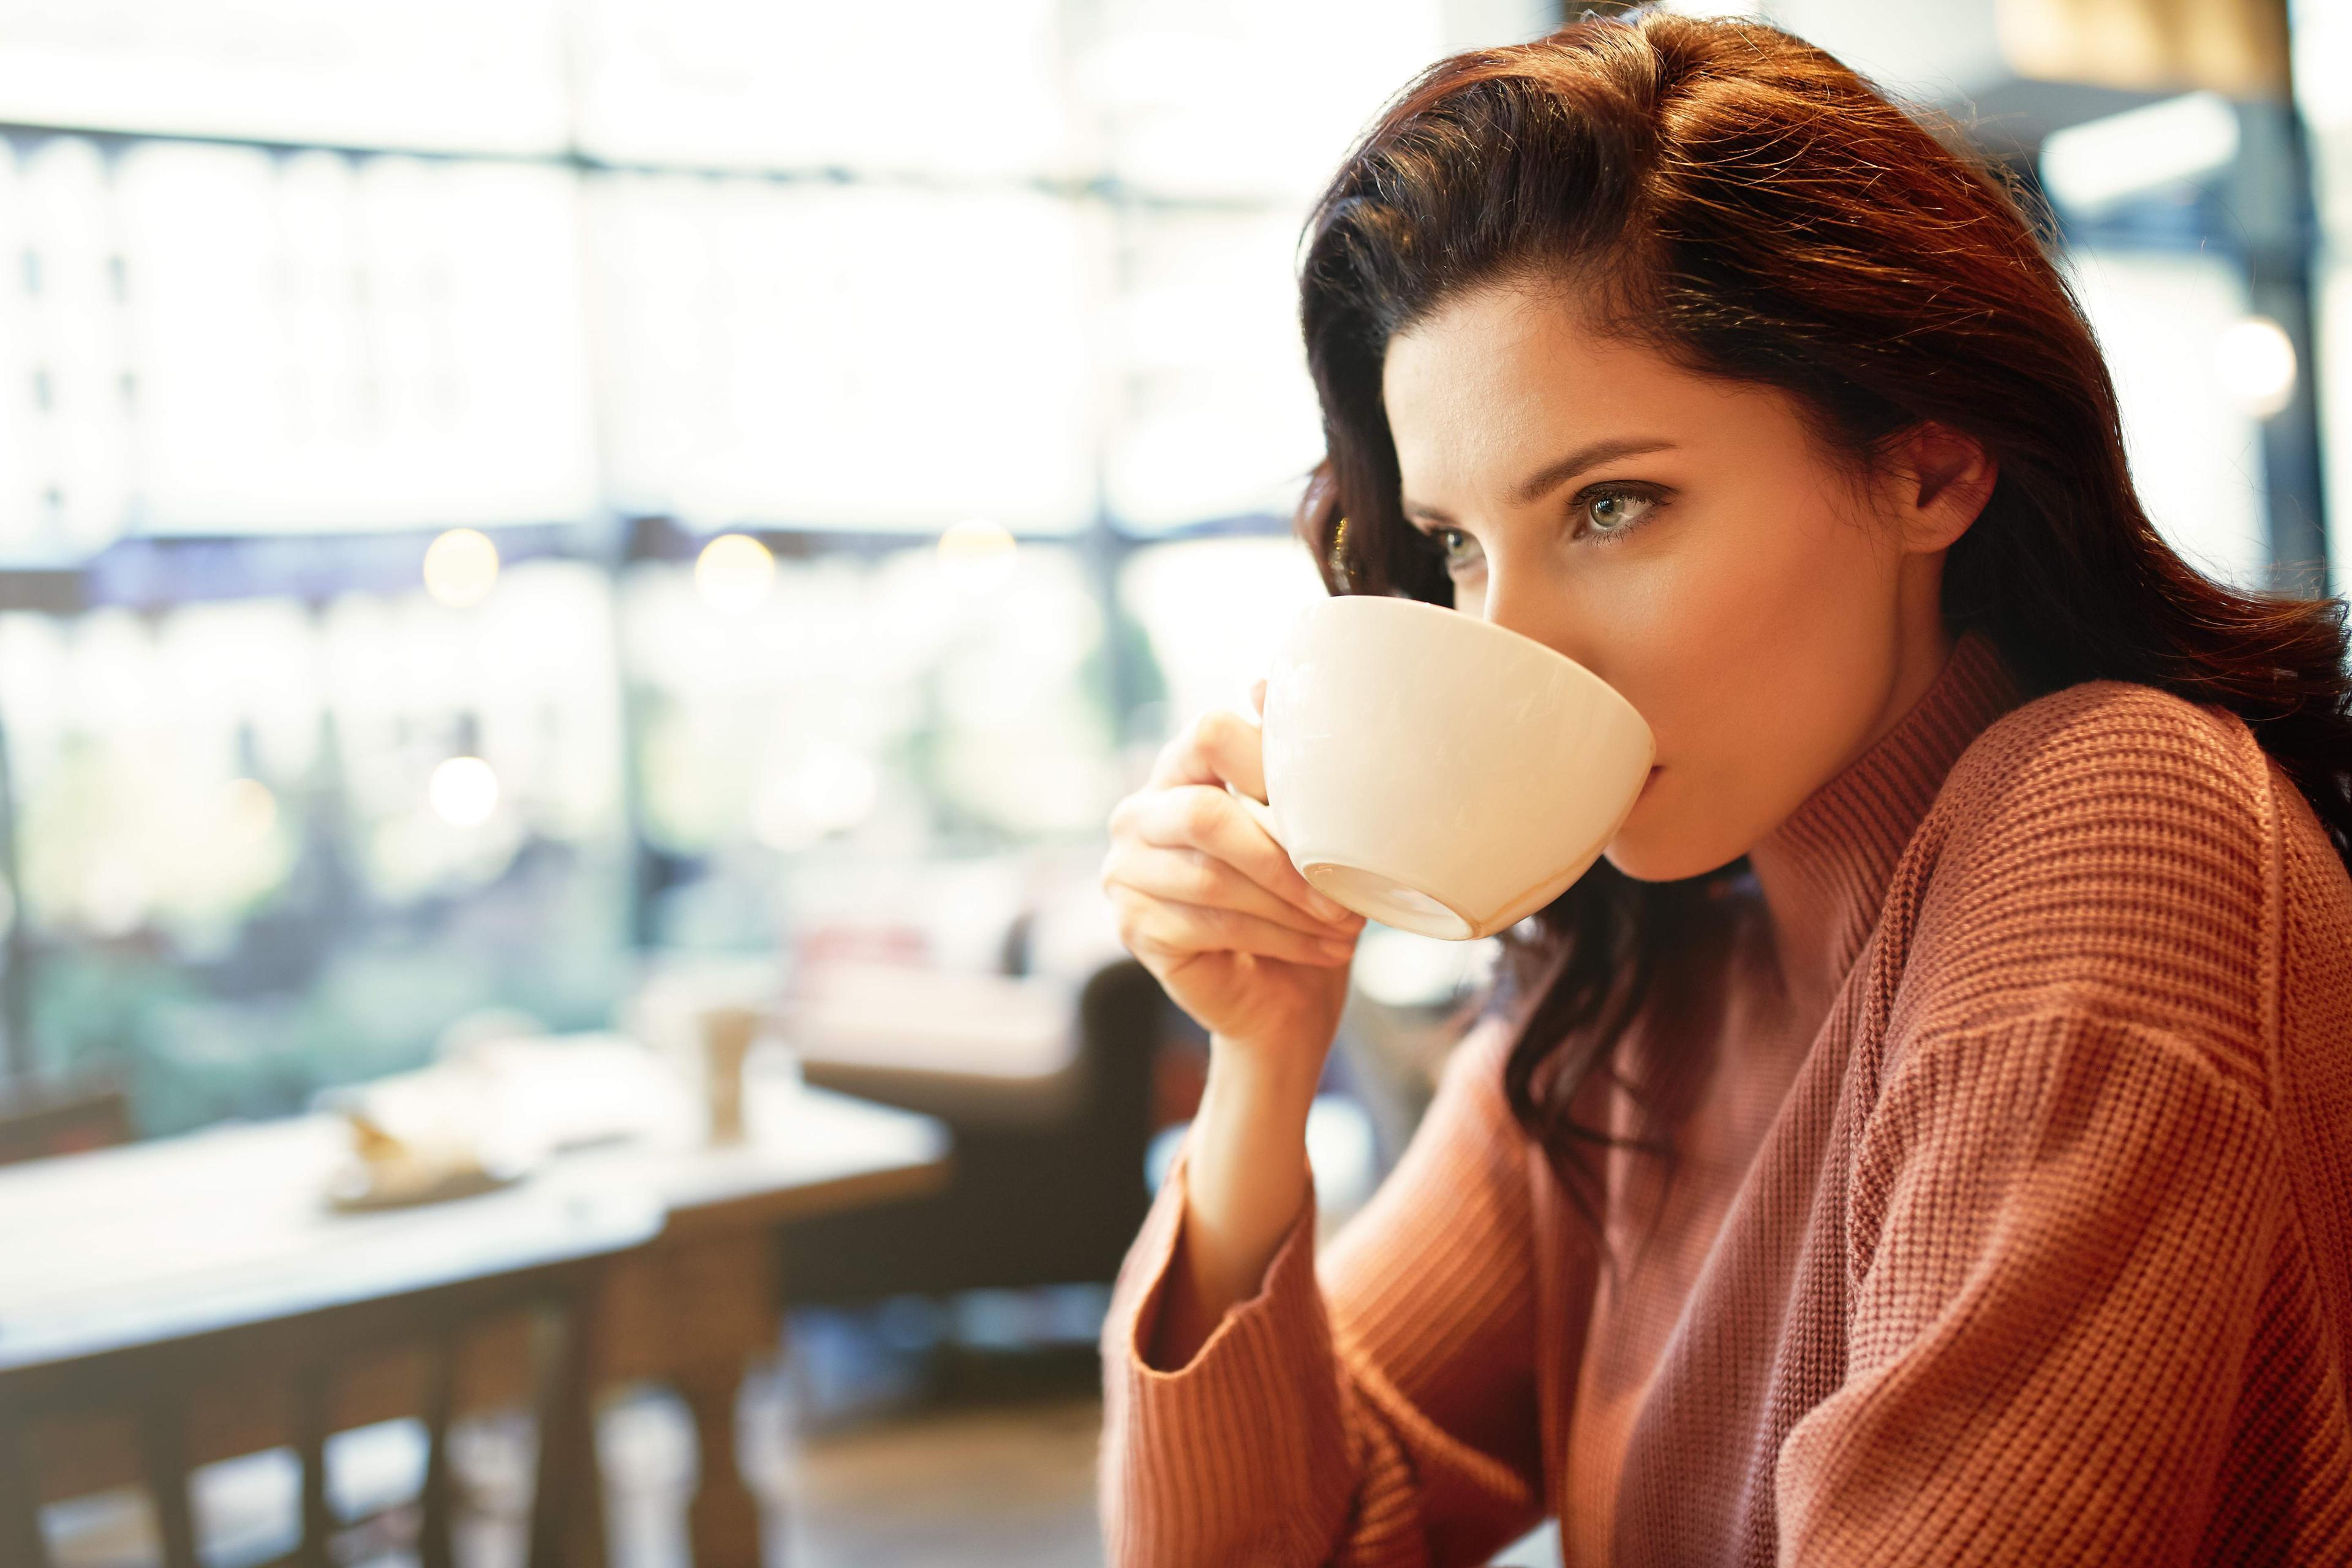 Ako ne možete da pijete zimi hladno piće, onda popijte kafu - Avaz